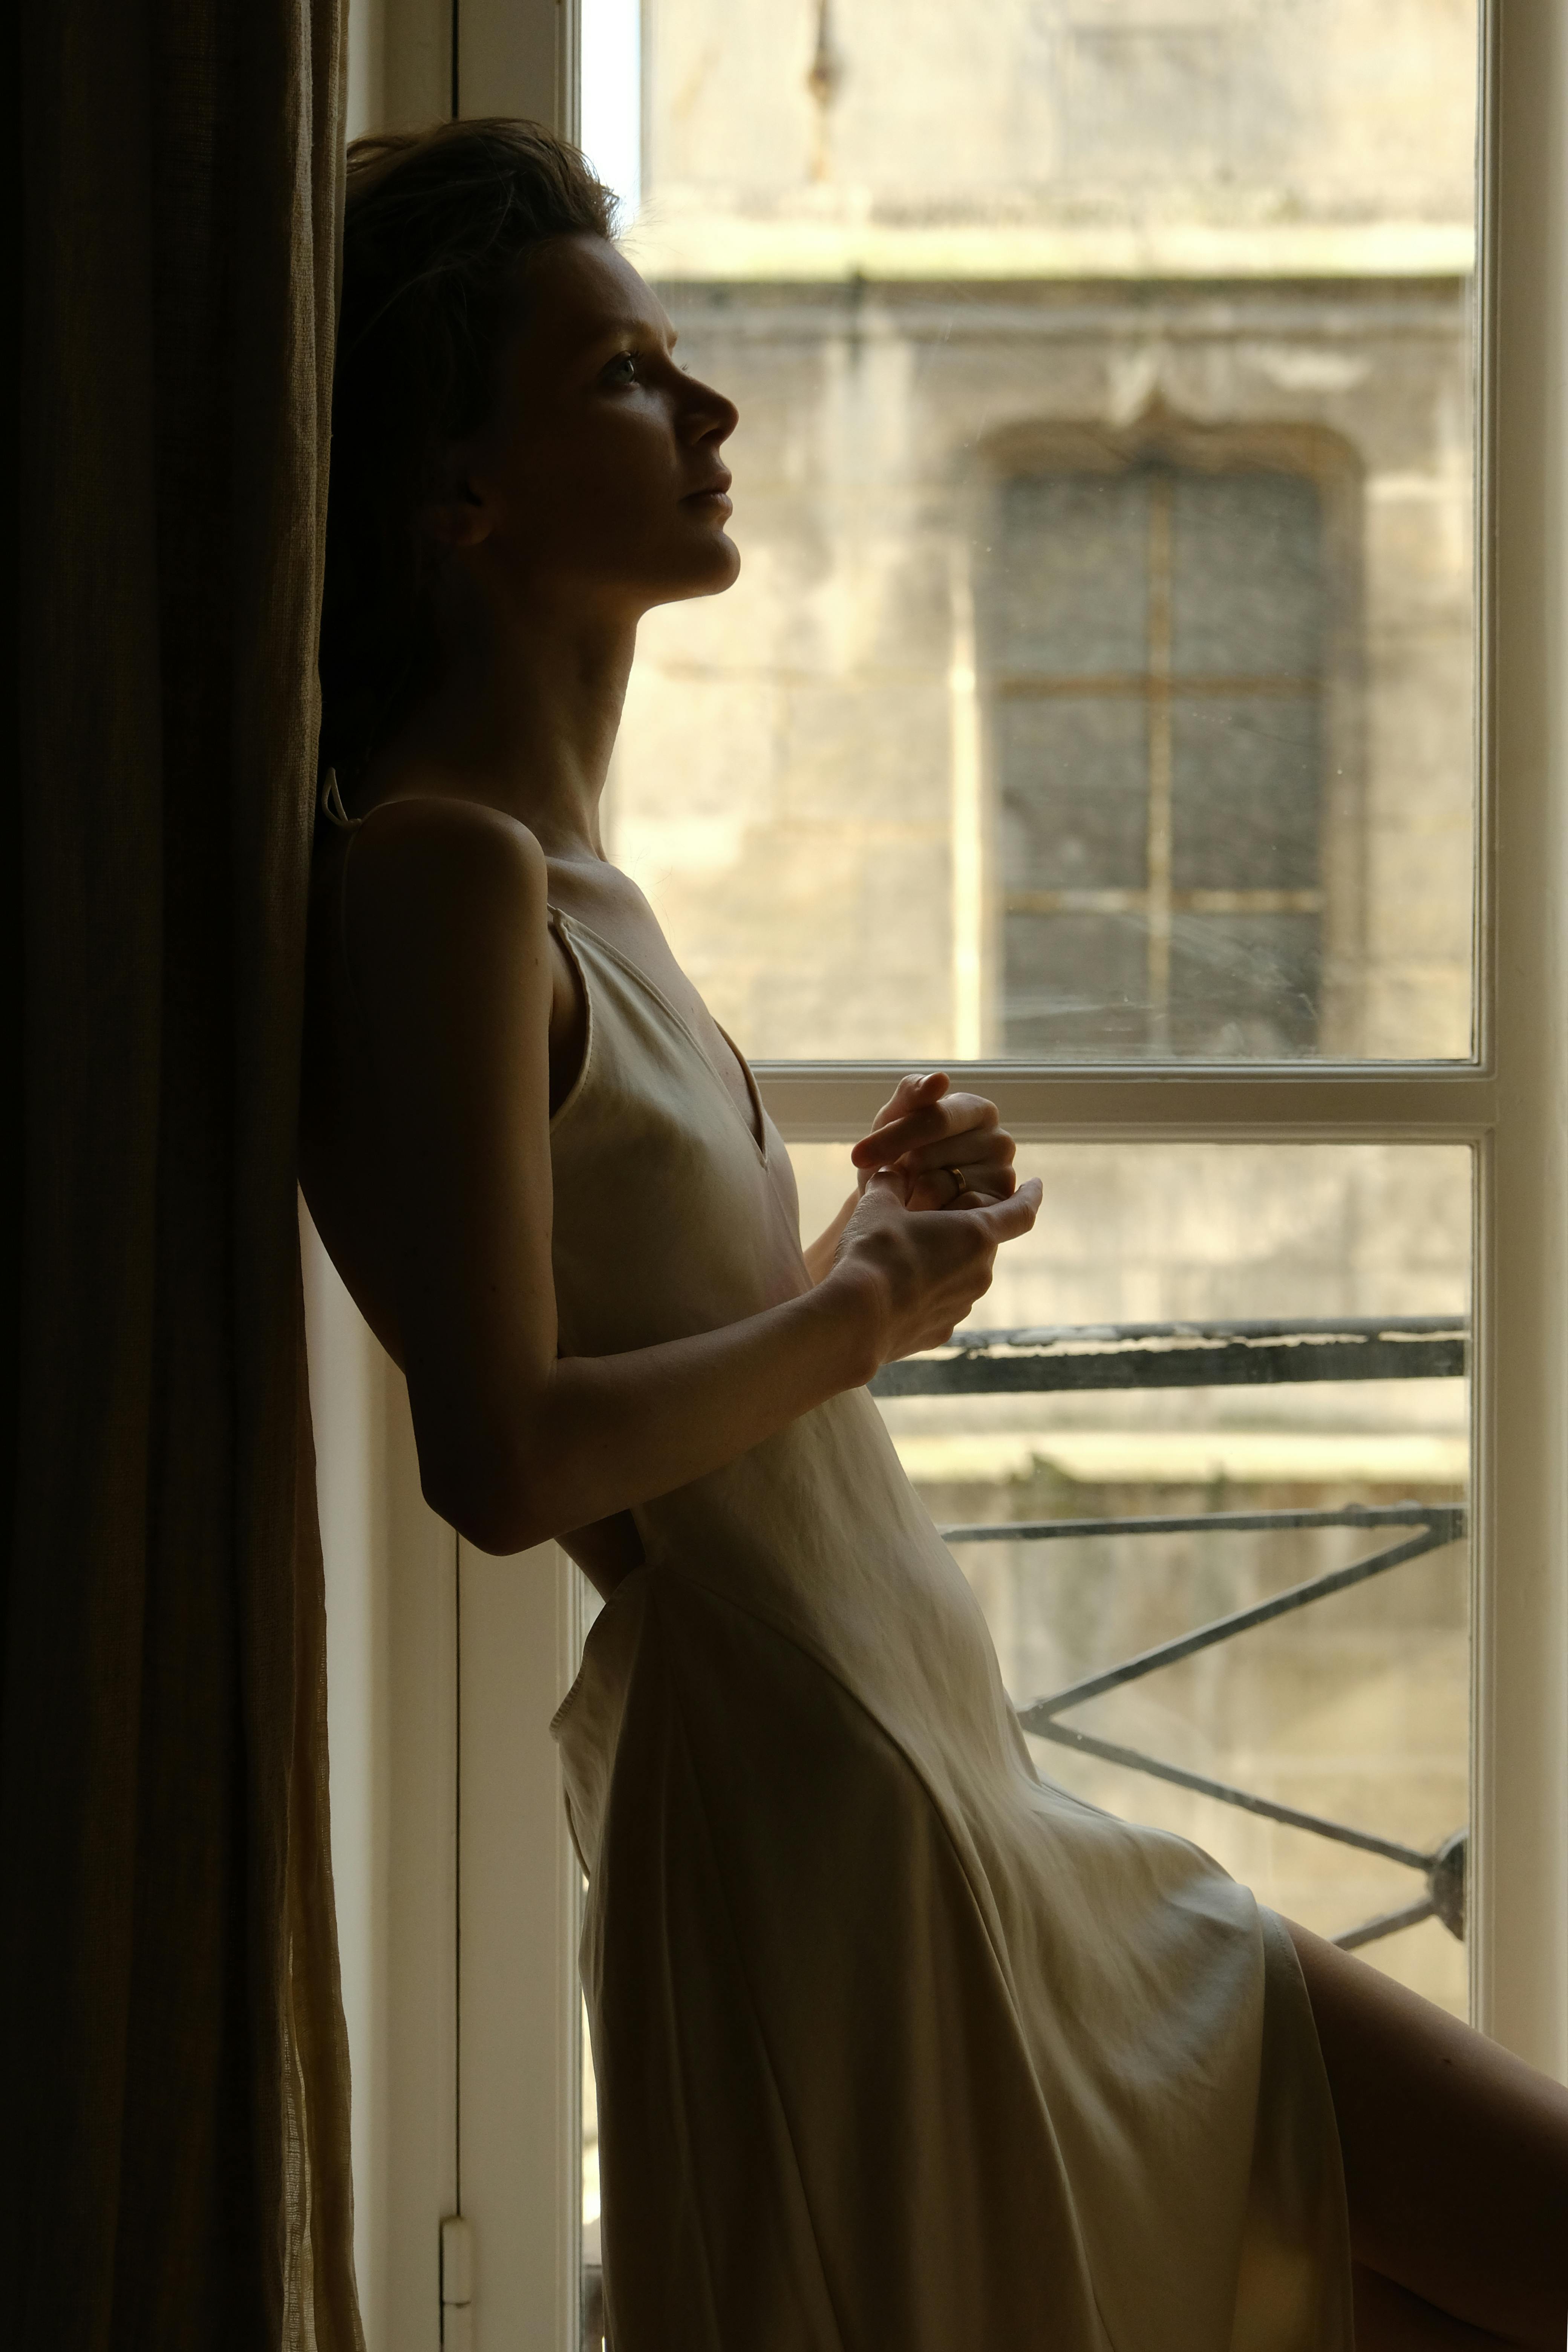 HD wallpaper: woman standing near white window, woman wearing